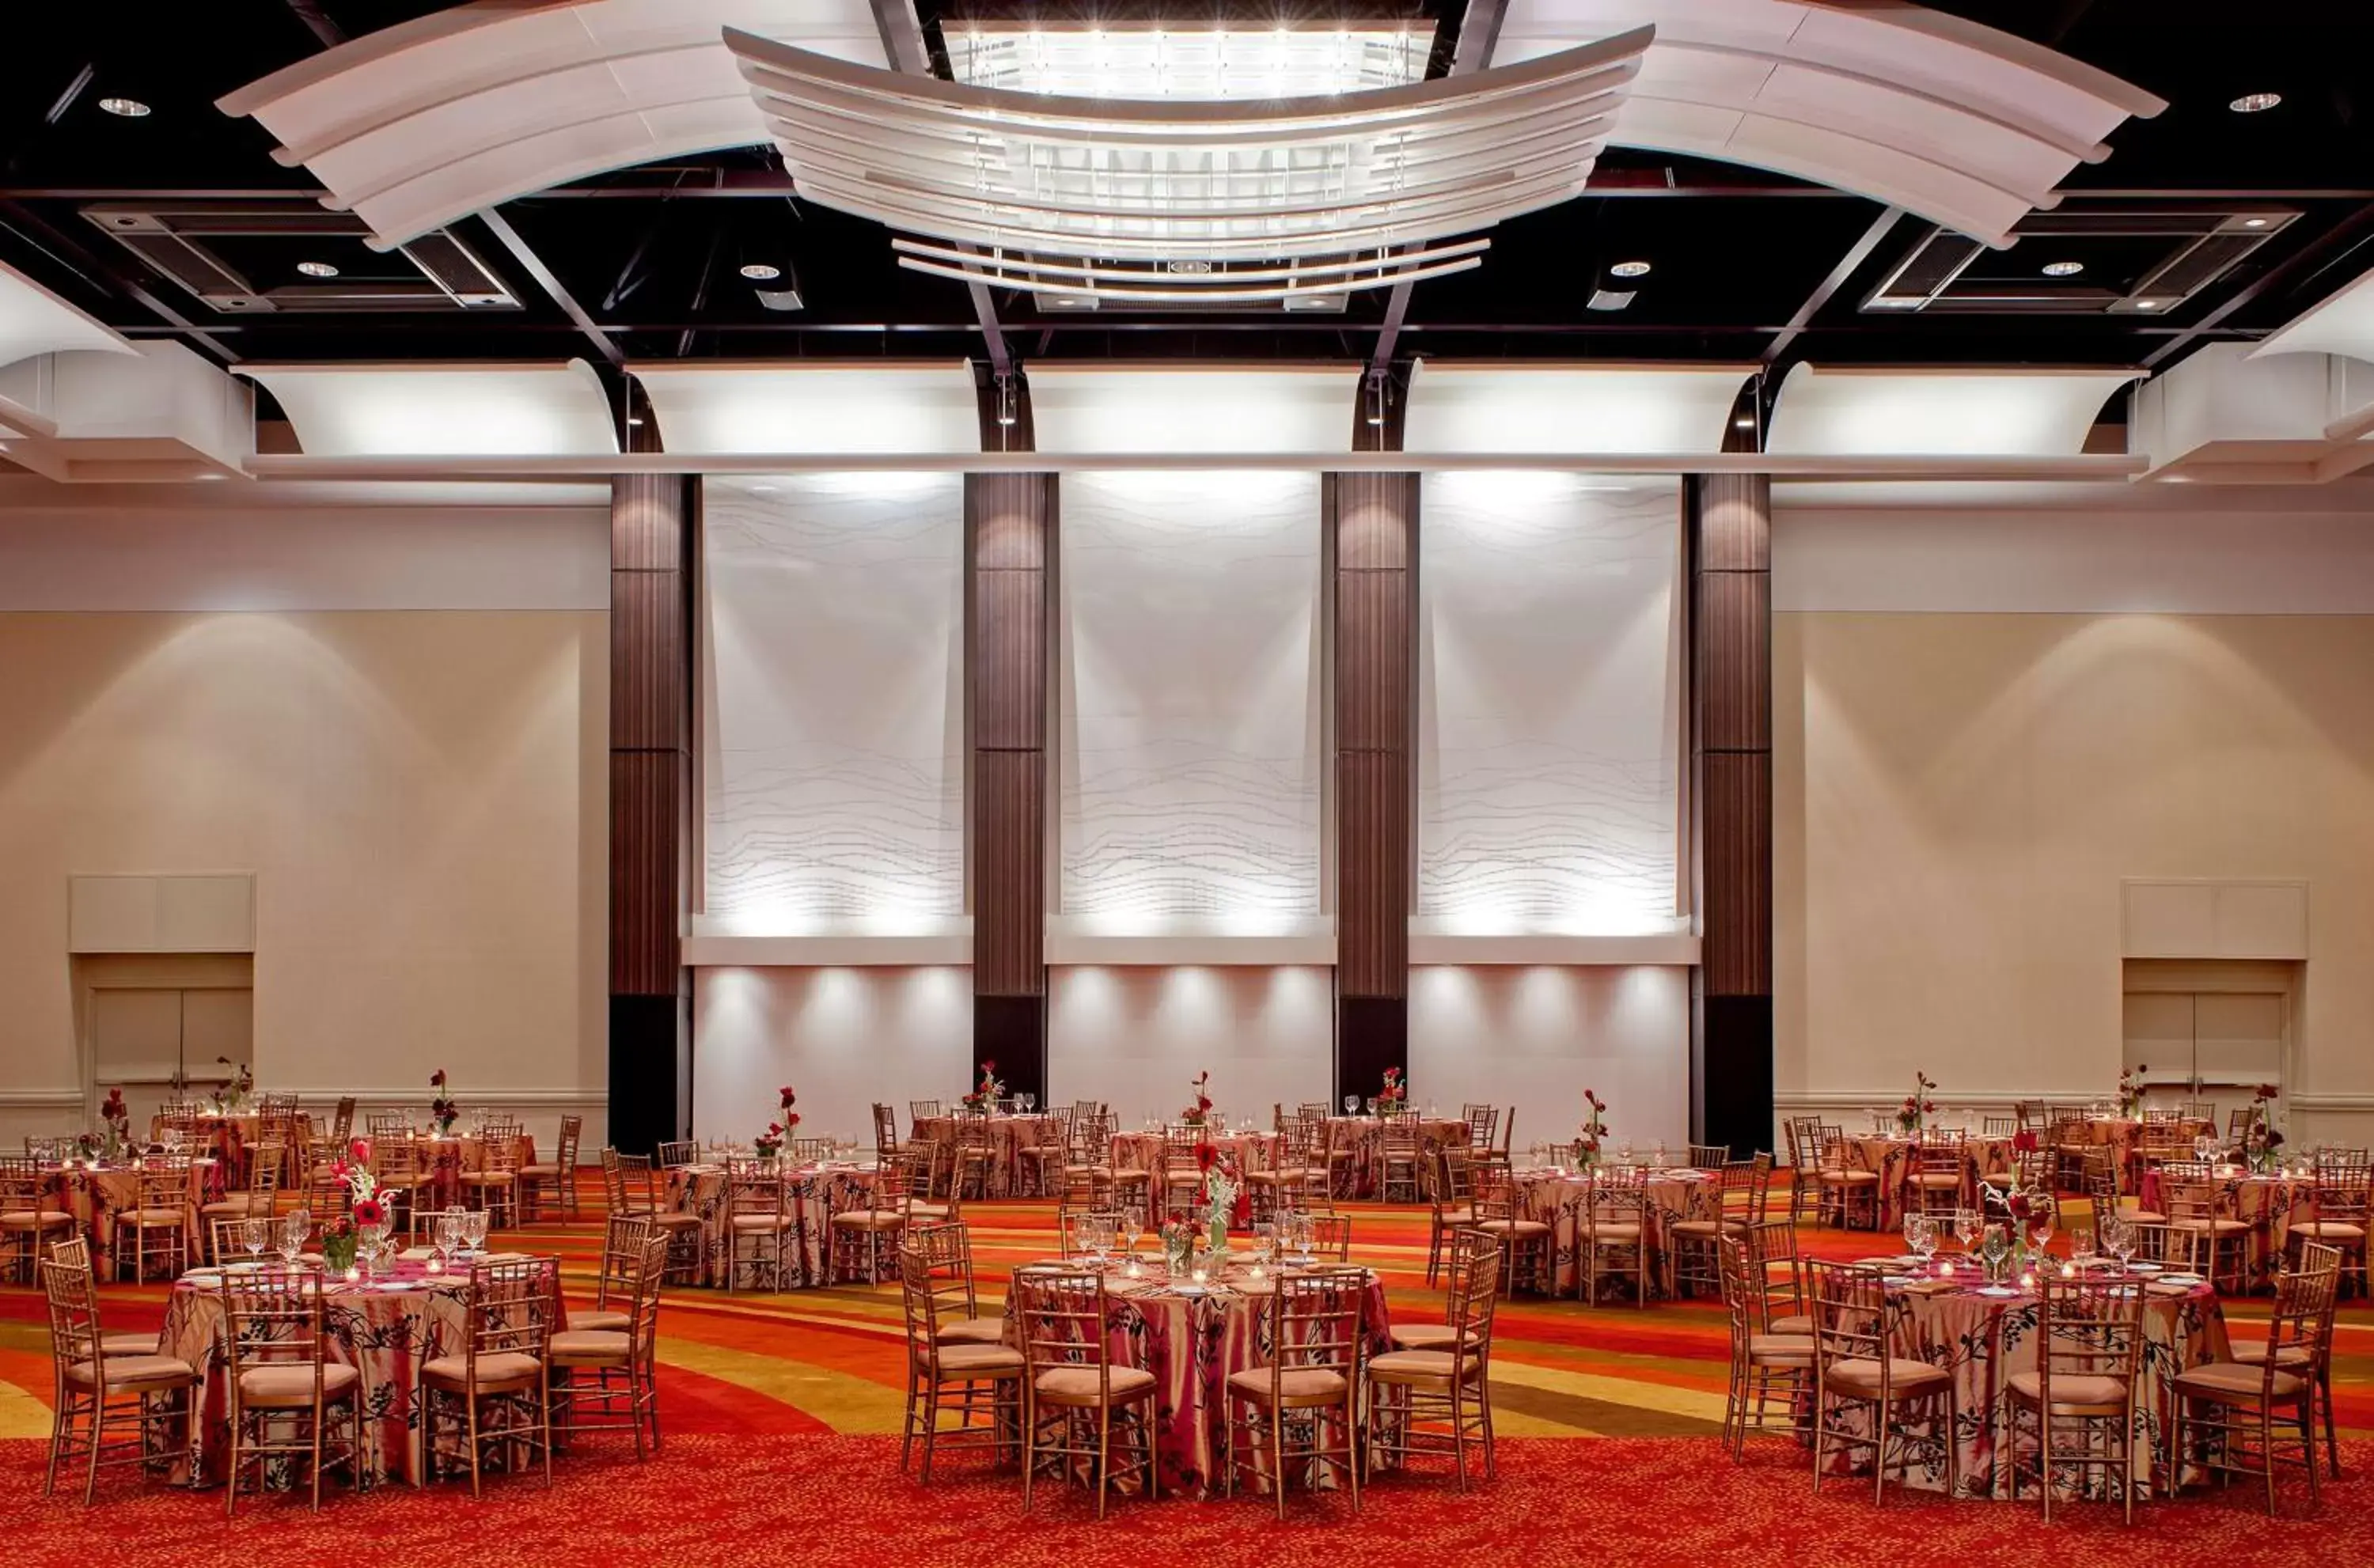 On site, Banquet Facilities in Hyatt Regency Atlanta